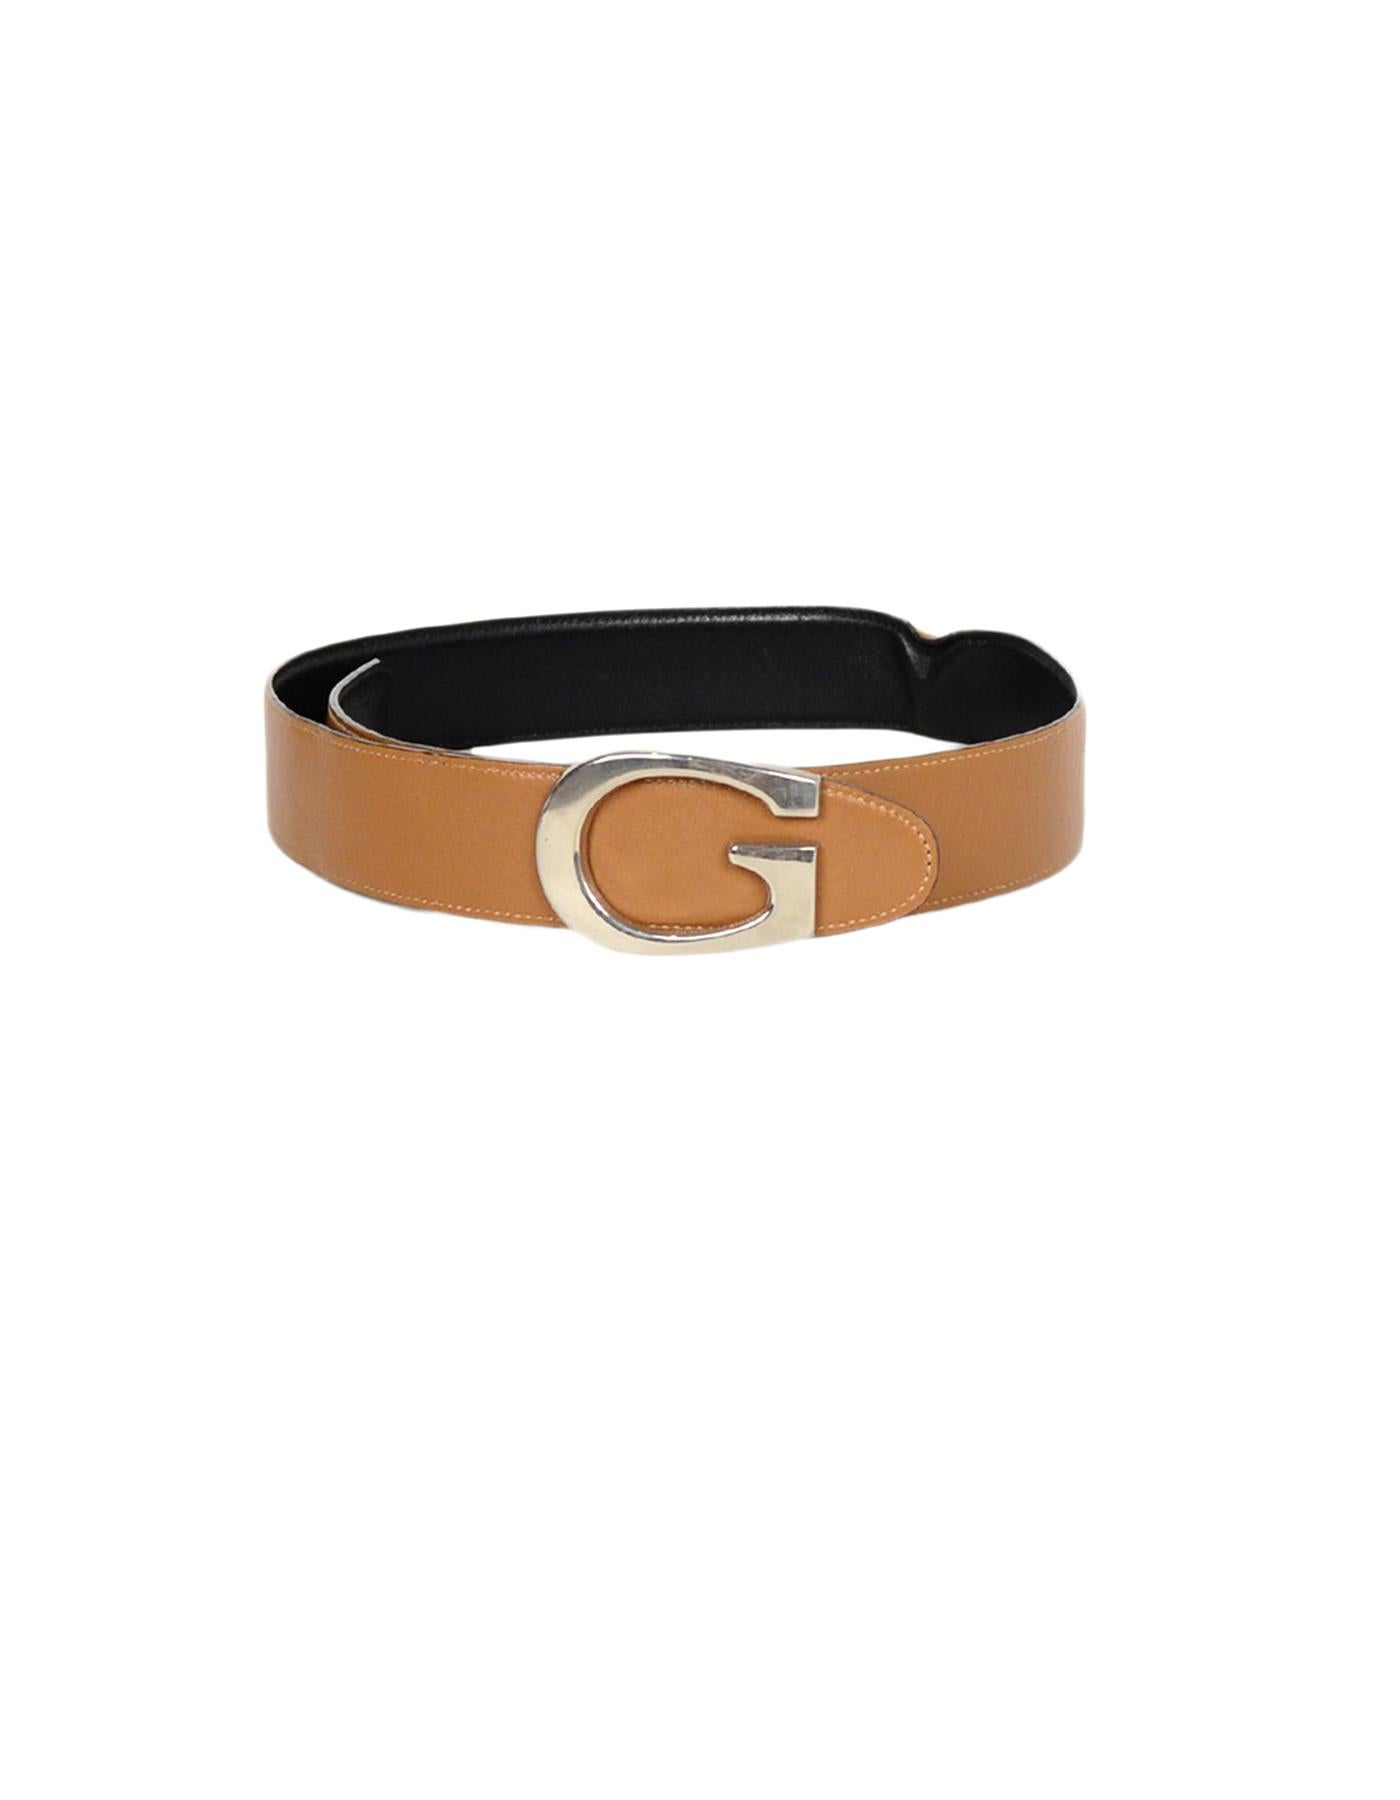 Women's Gucci Black/Tan Reversible Leather Belt W/ G Buckle Sz 65/26